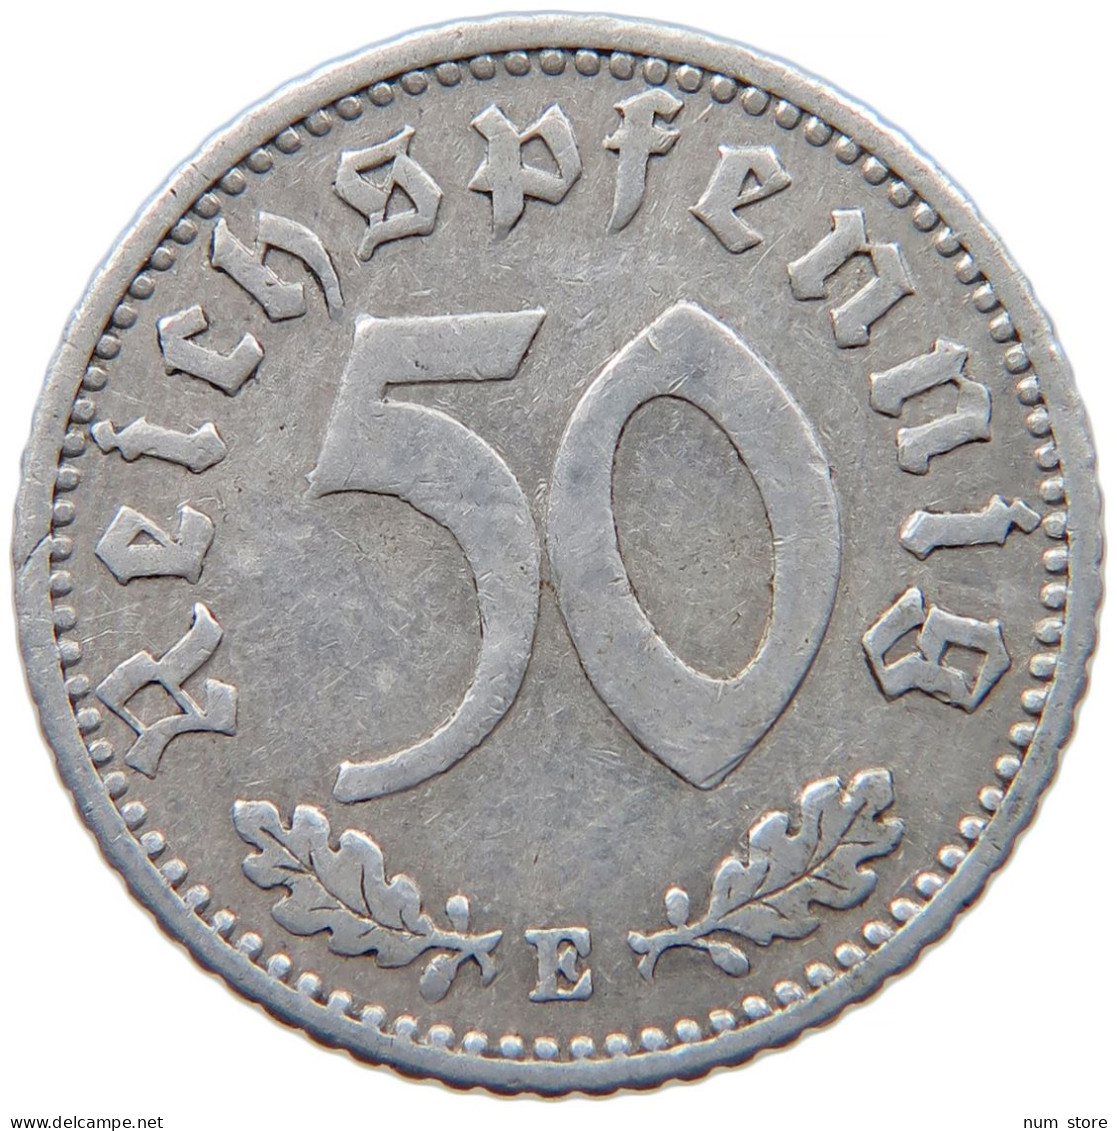 GERMANY 50 REICHSPFENNIG 1935 E #s089 0545 - 50 Reichspfennig